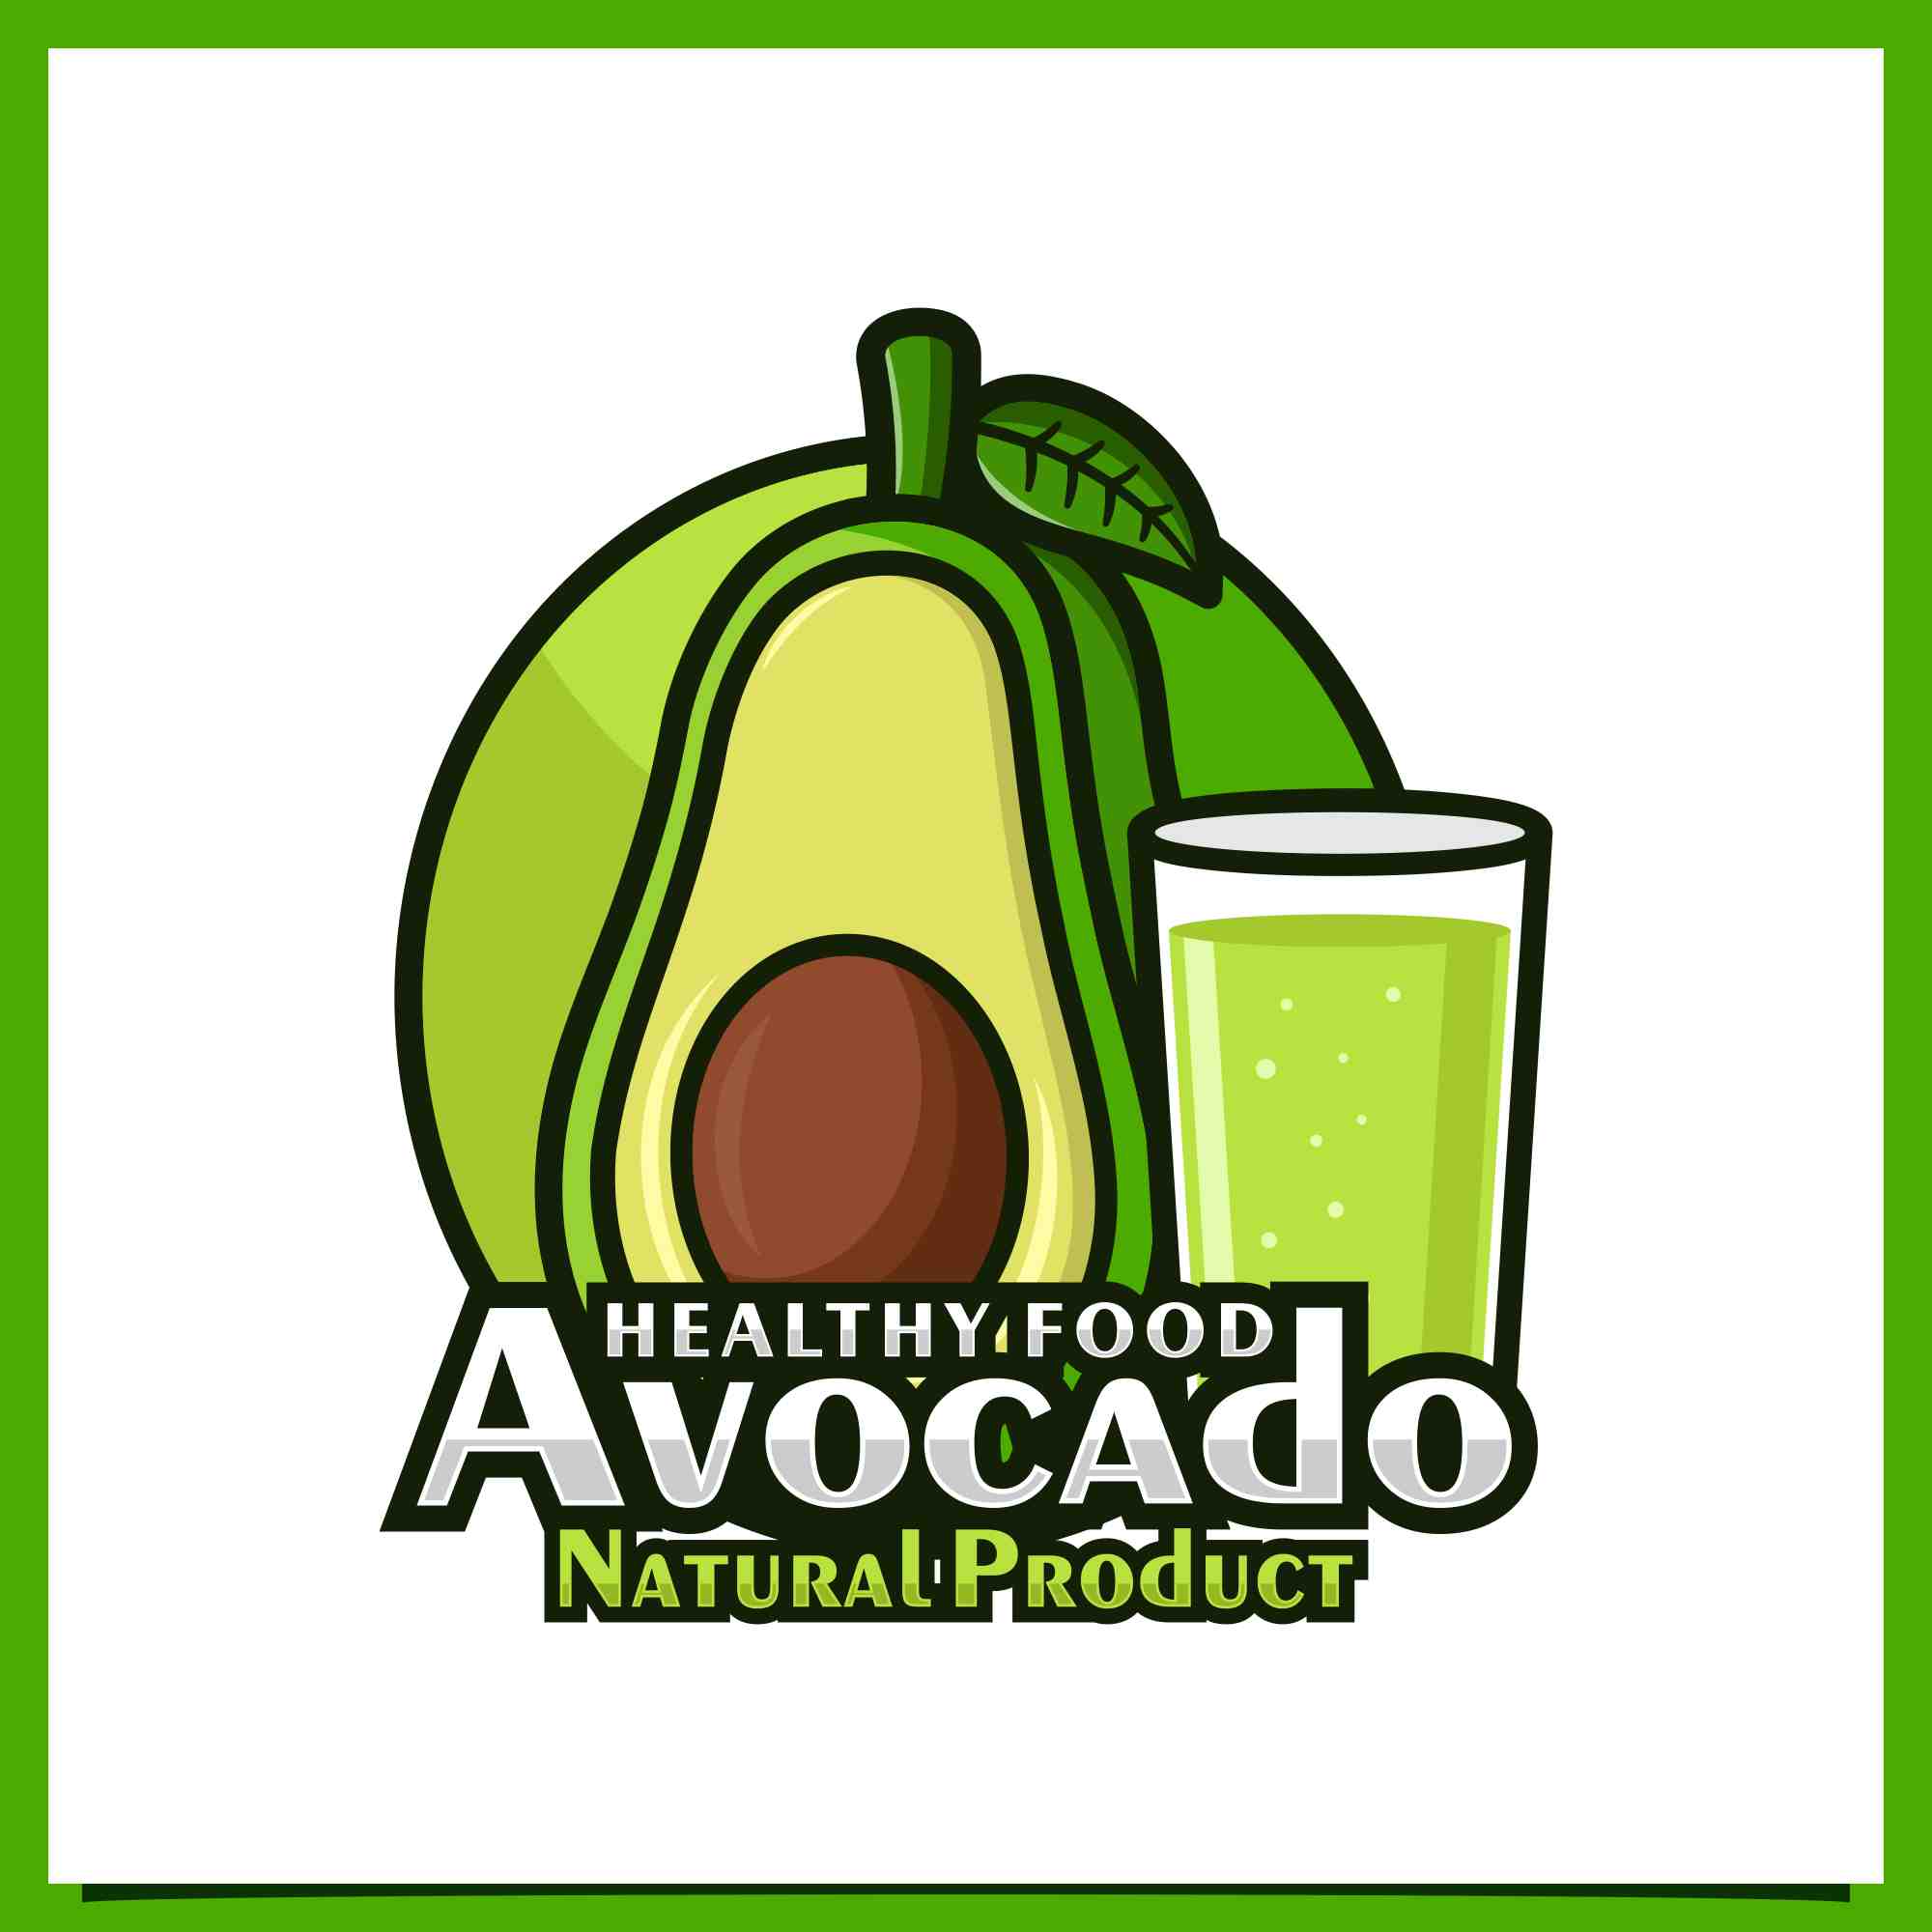 Set Avocado badge logo design collection - $4 preview image.